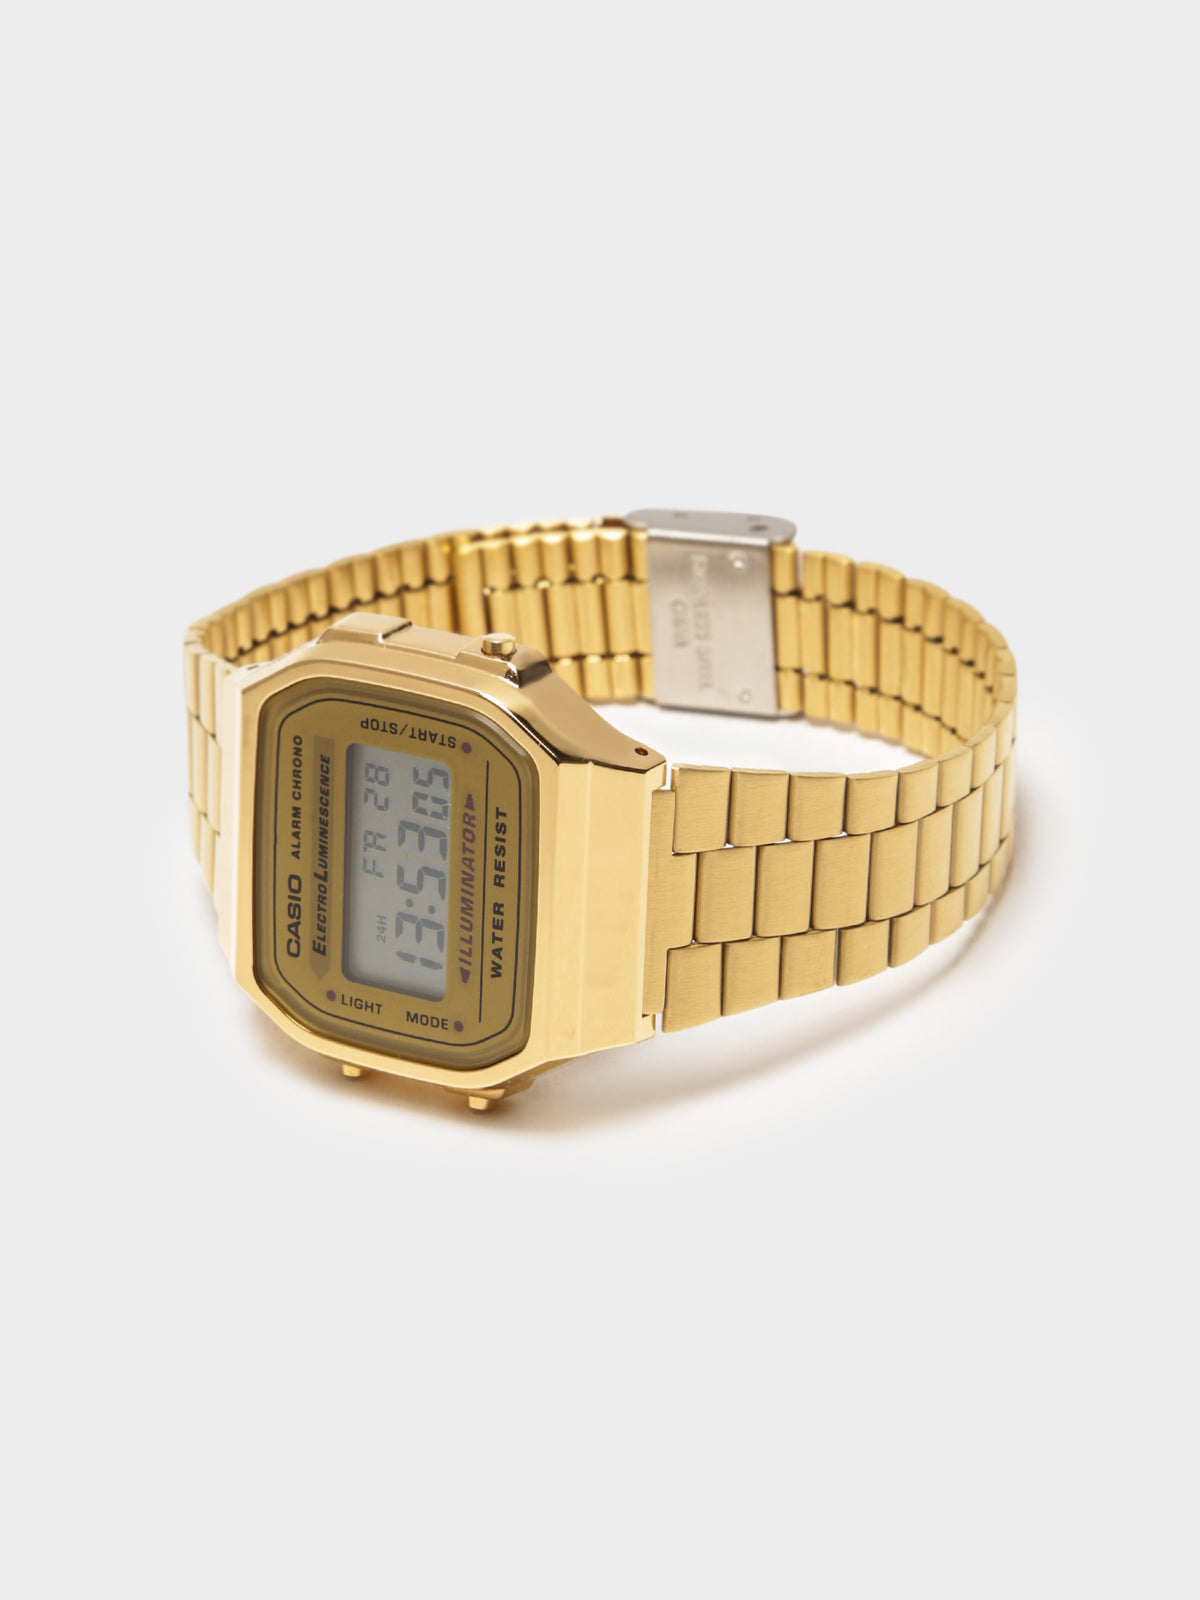 A168WG-9 Digital Alarm Watch in Gold